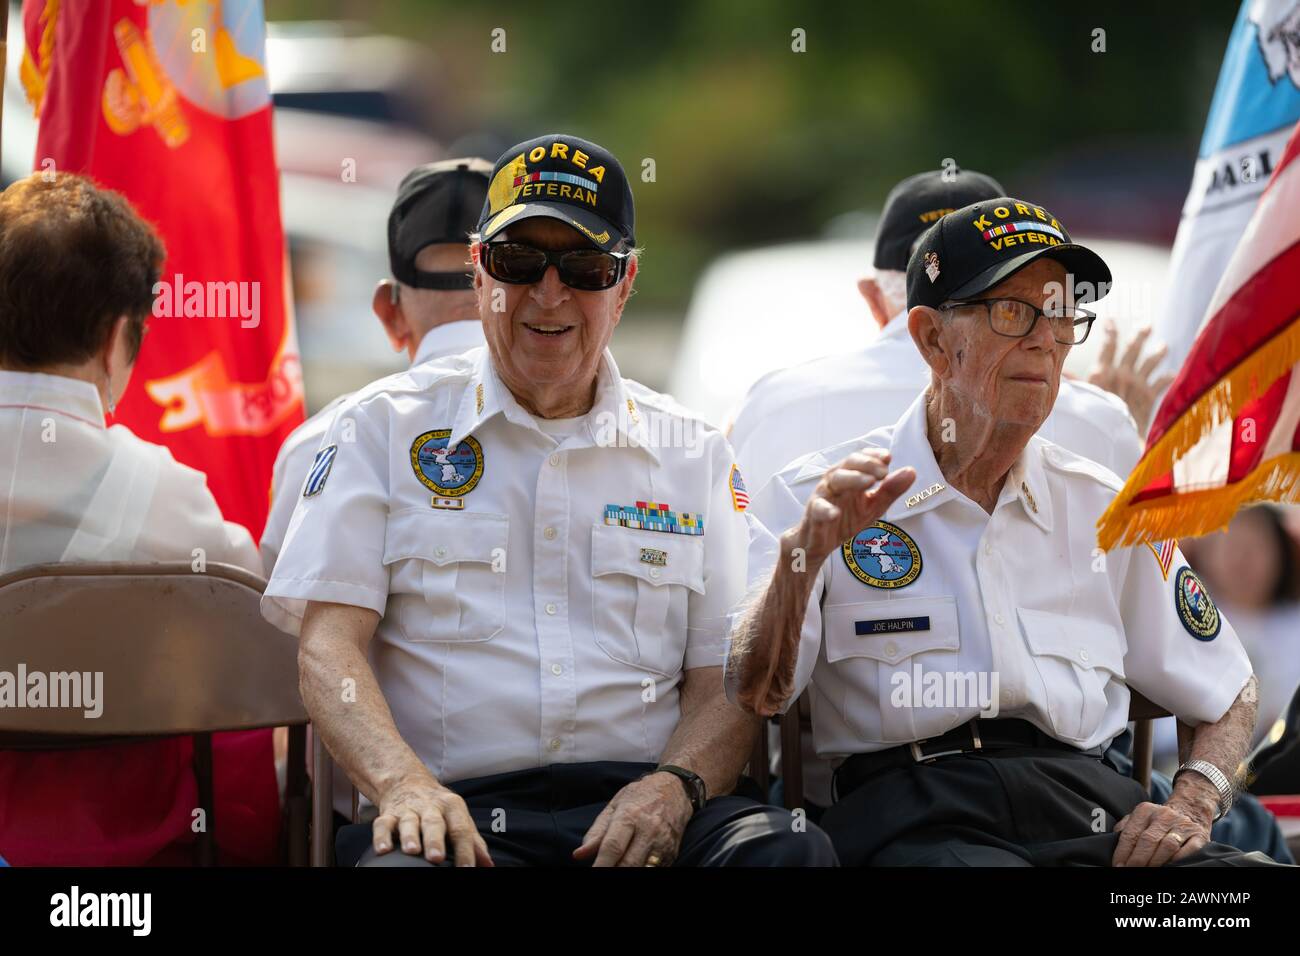 Arlington, Texas, USA - 4. Juli 2019: Arlington, 4. Juli Parade, Korea-Kriegsveteranen aus dem Militär der Vereinigten Staaten, die während ihrer Fahrt auf einem Schwimmer transportiert wurden Stockfoto